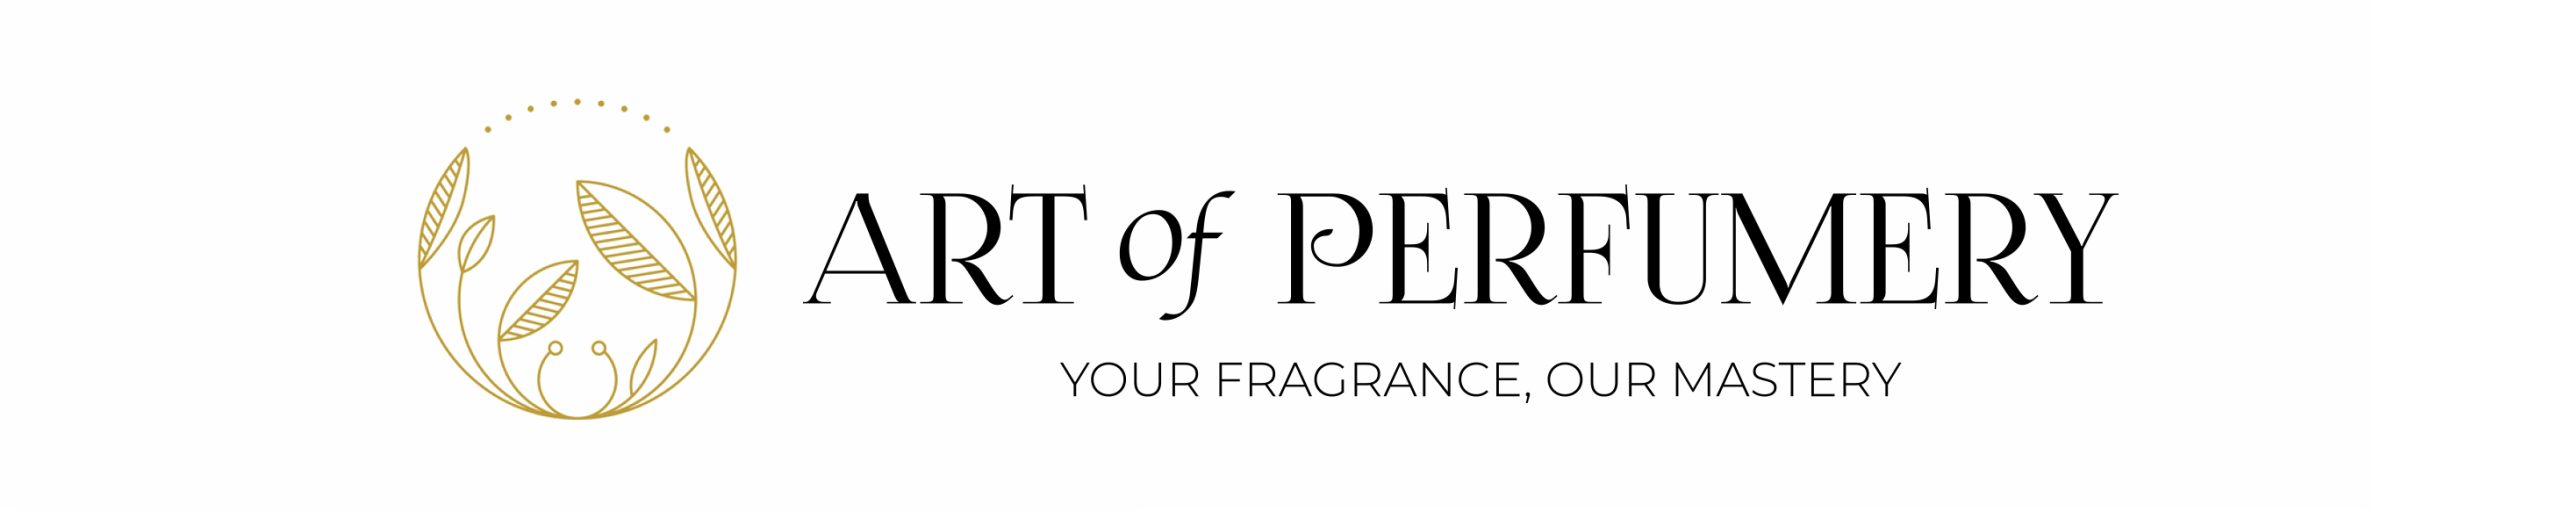 art of perfumery banner